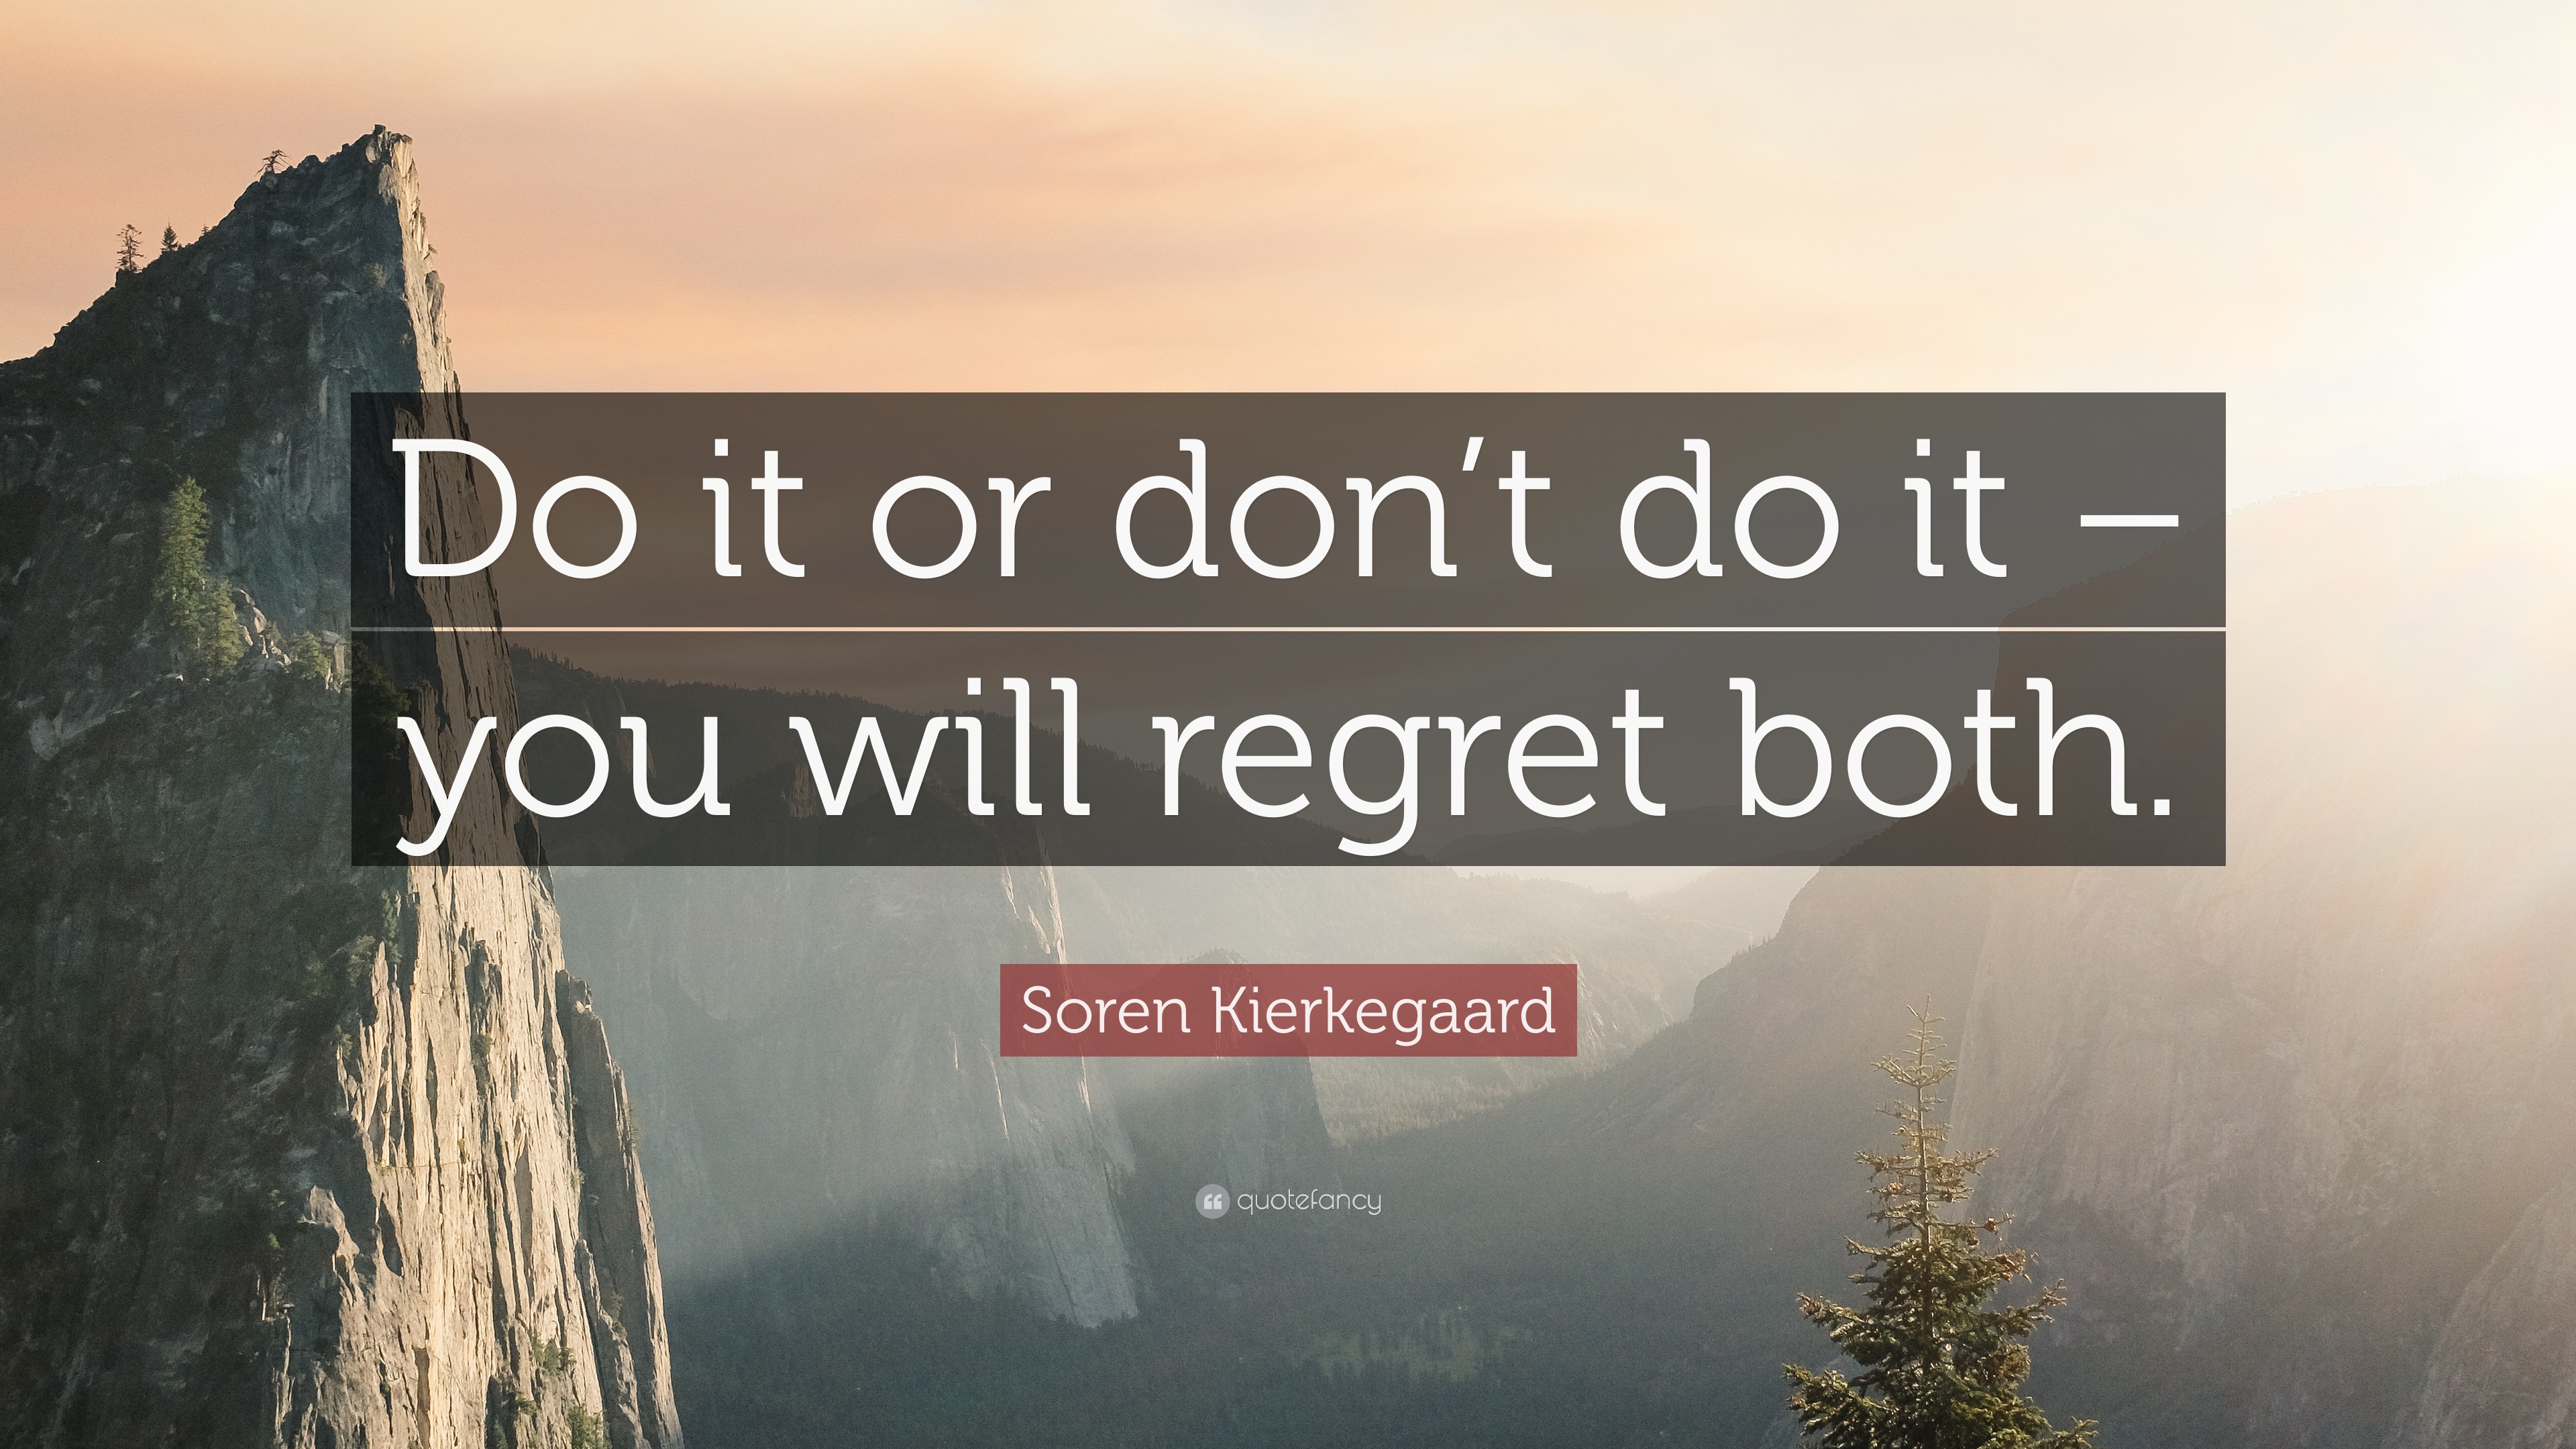 https://quotefancy.com/media/wallpaper/3840x2160/2312284-Soren-Kierkegaard-Quote-Do-it-or-don-t-do-it-you-will-regret-both.jpg